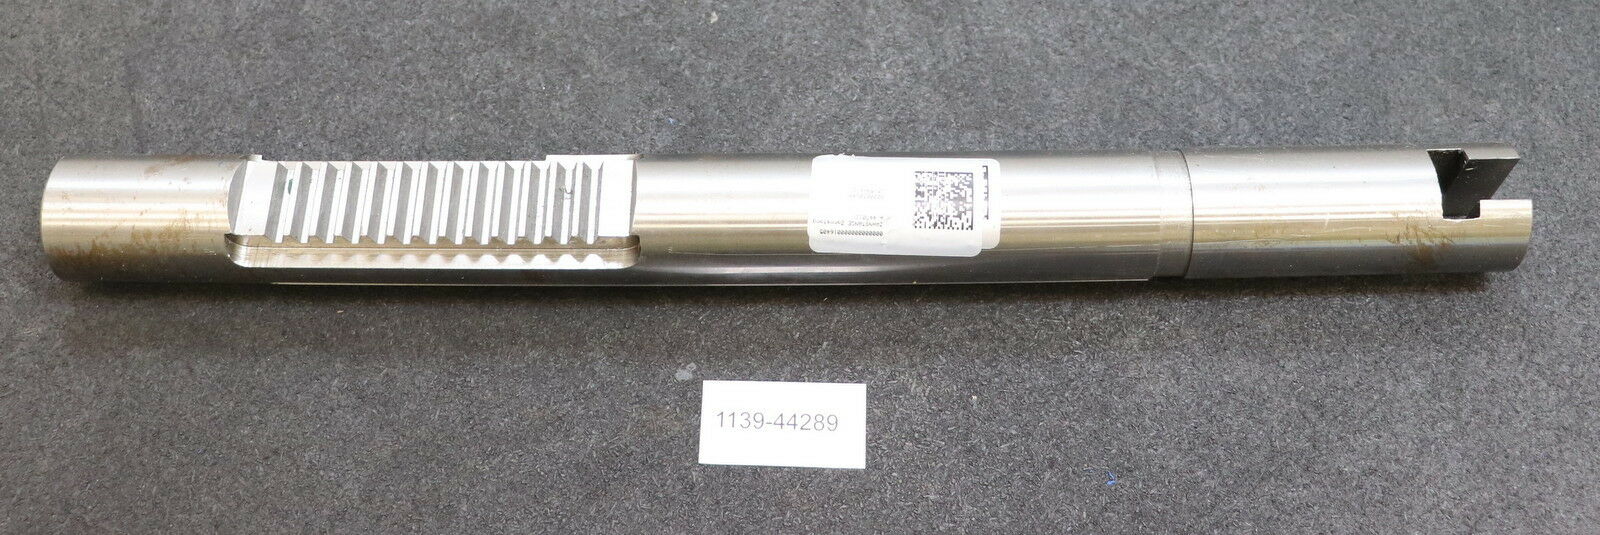 EX-CELL-O Zahnstange 447011 Gesamtlänge 448mm Durchmesser 40,0mm